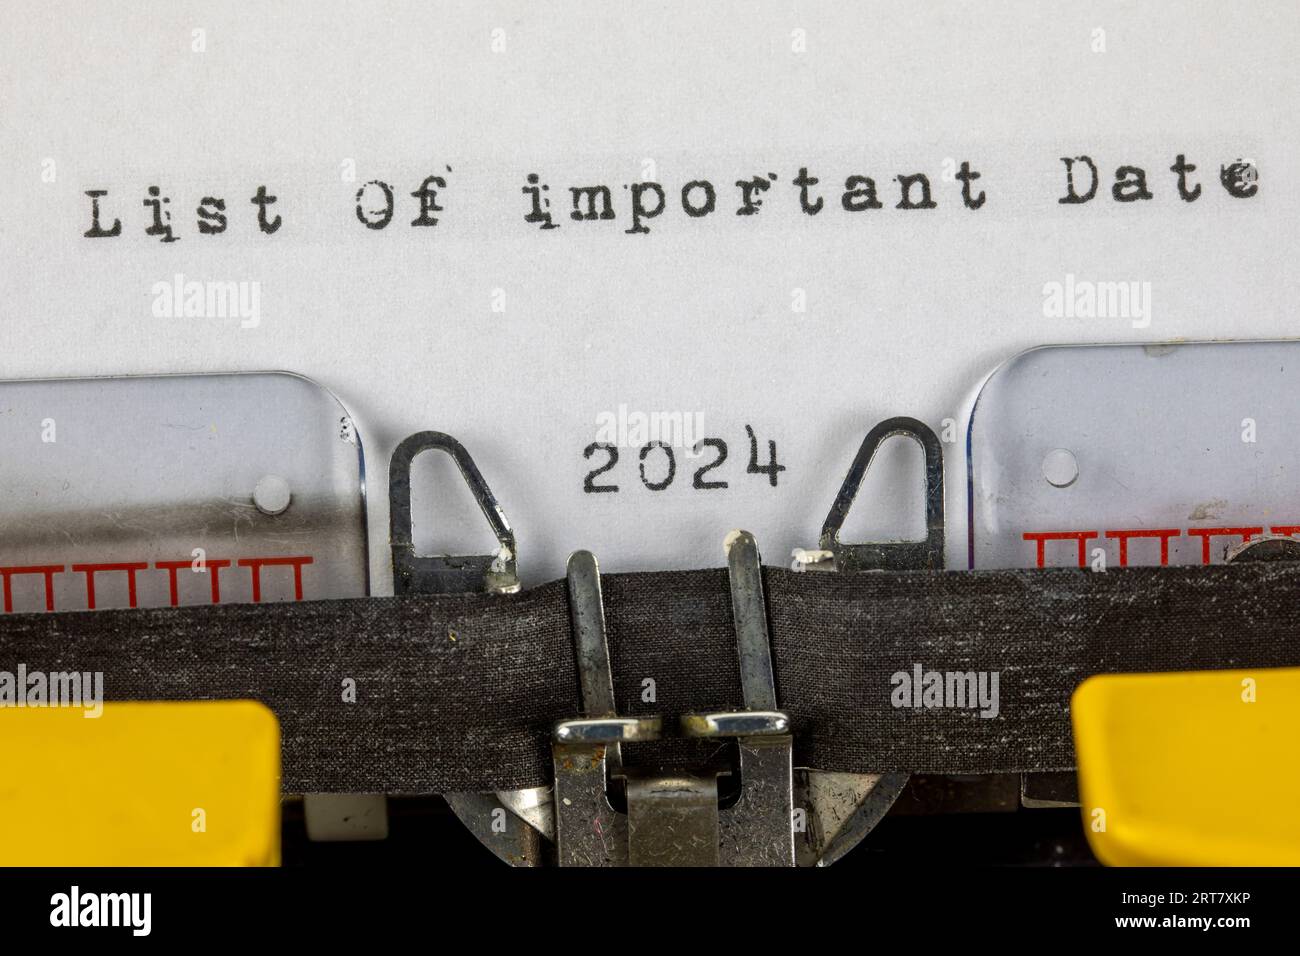 Elenco dei giorni importanti 2024 scritto su una vecchia macchina da scrivere Foto Stock